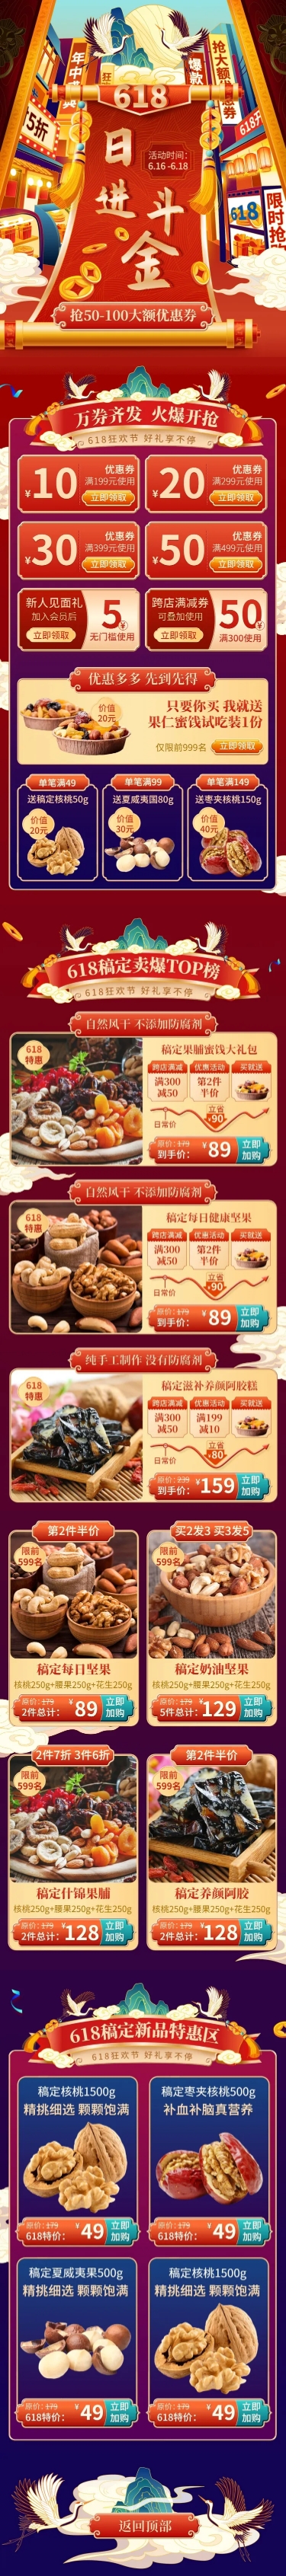 中国风618大促食品店铺首页预览效果